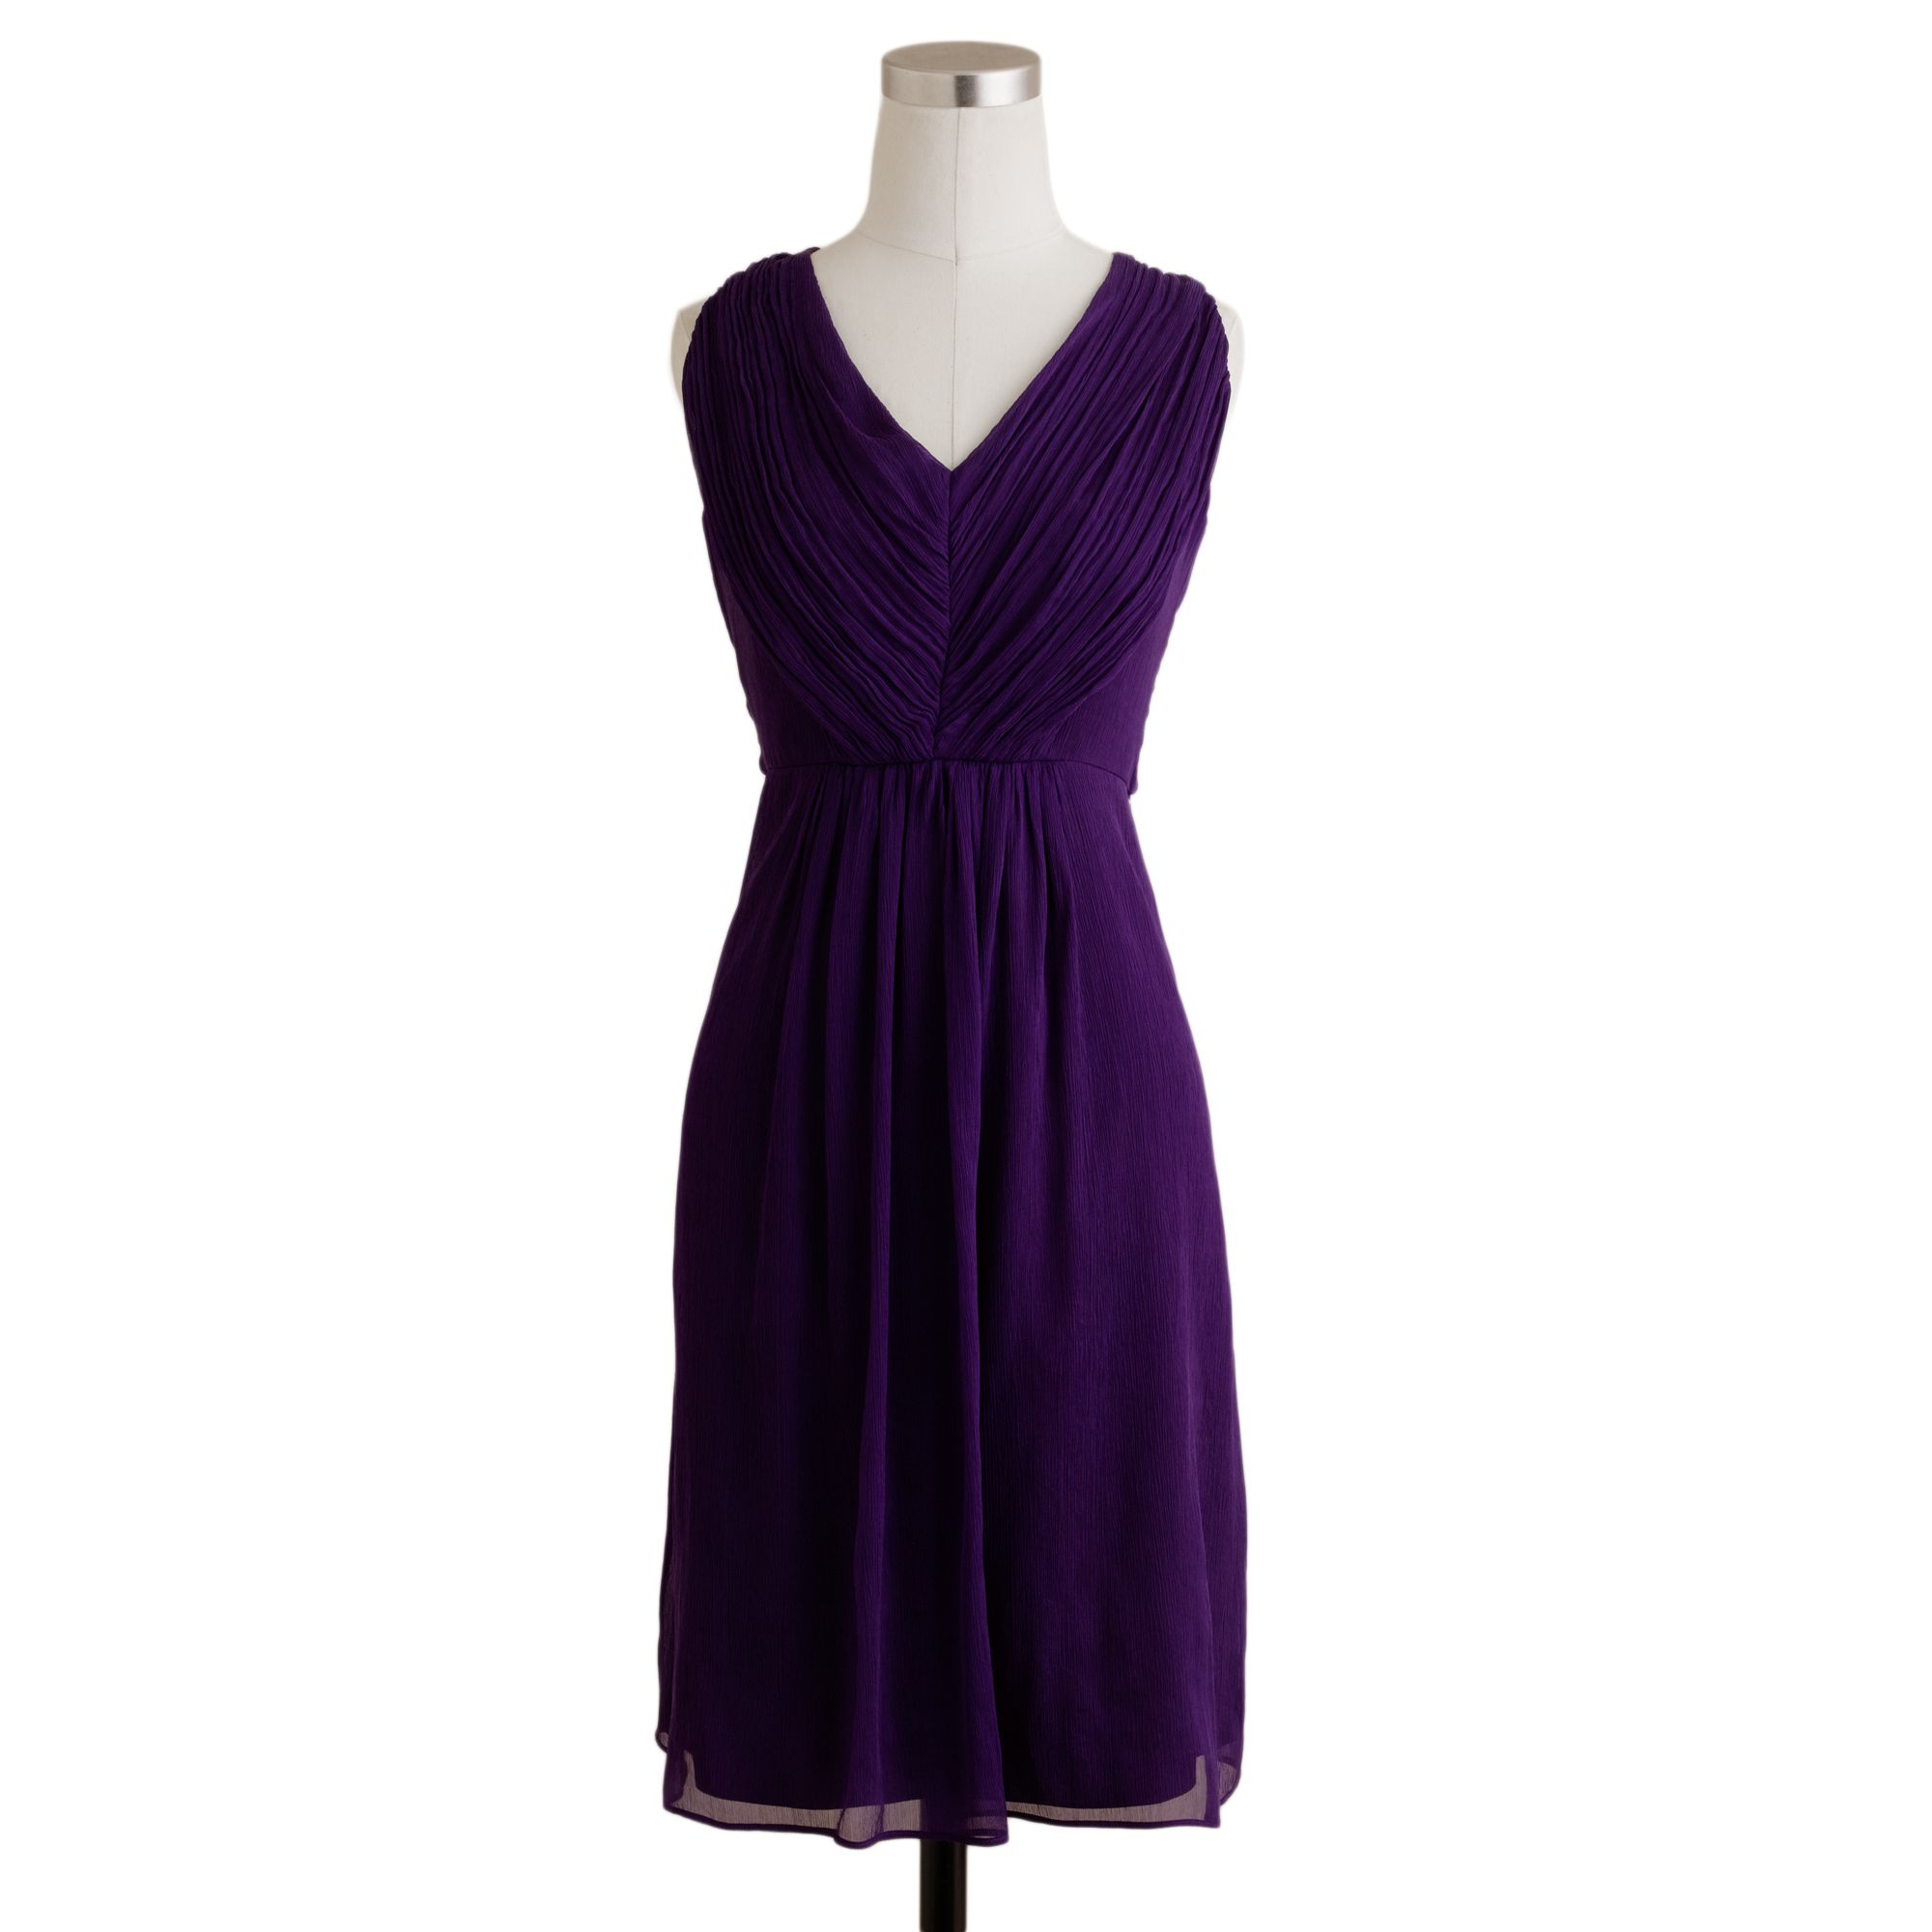 J.crew Louisa Dress in Silk Chiffon in Purple | Lyst